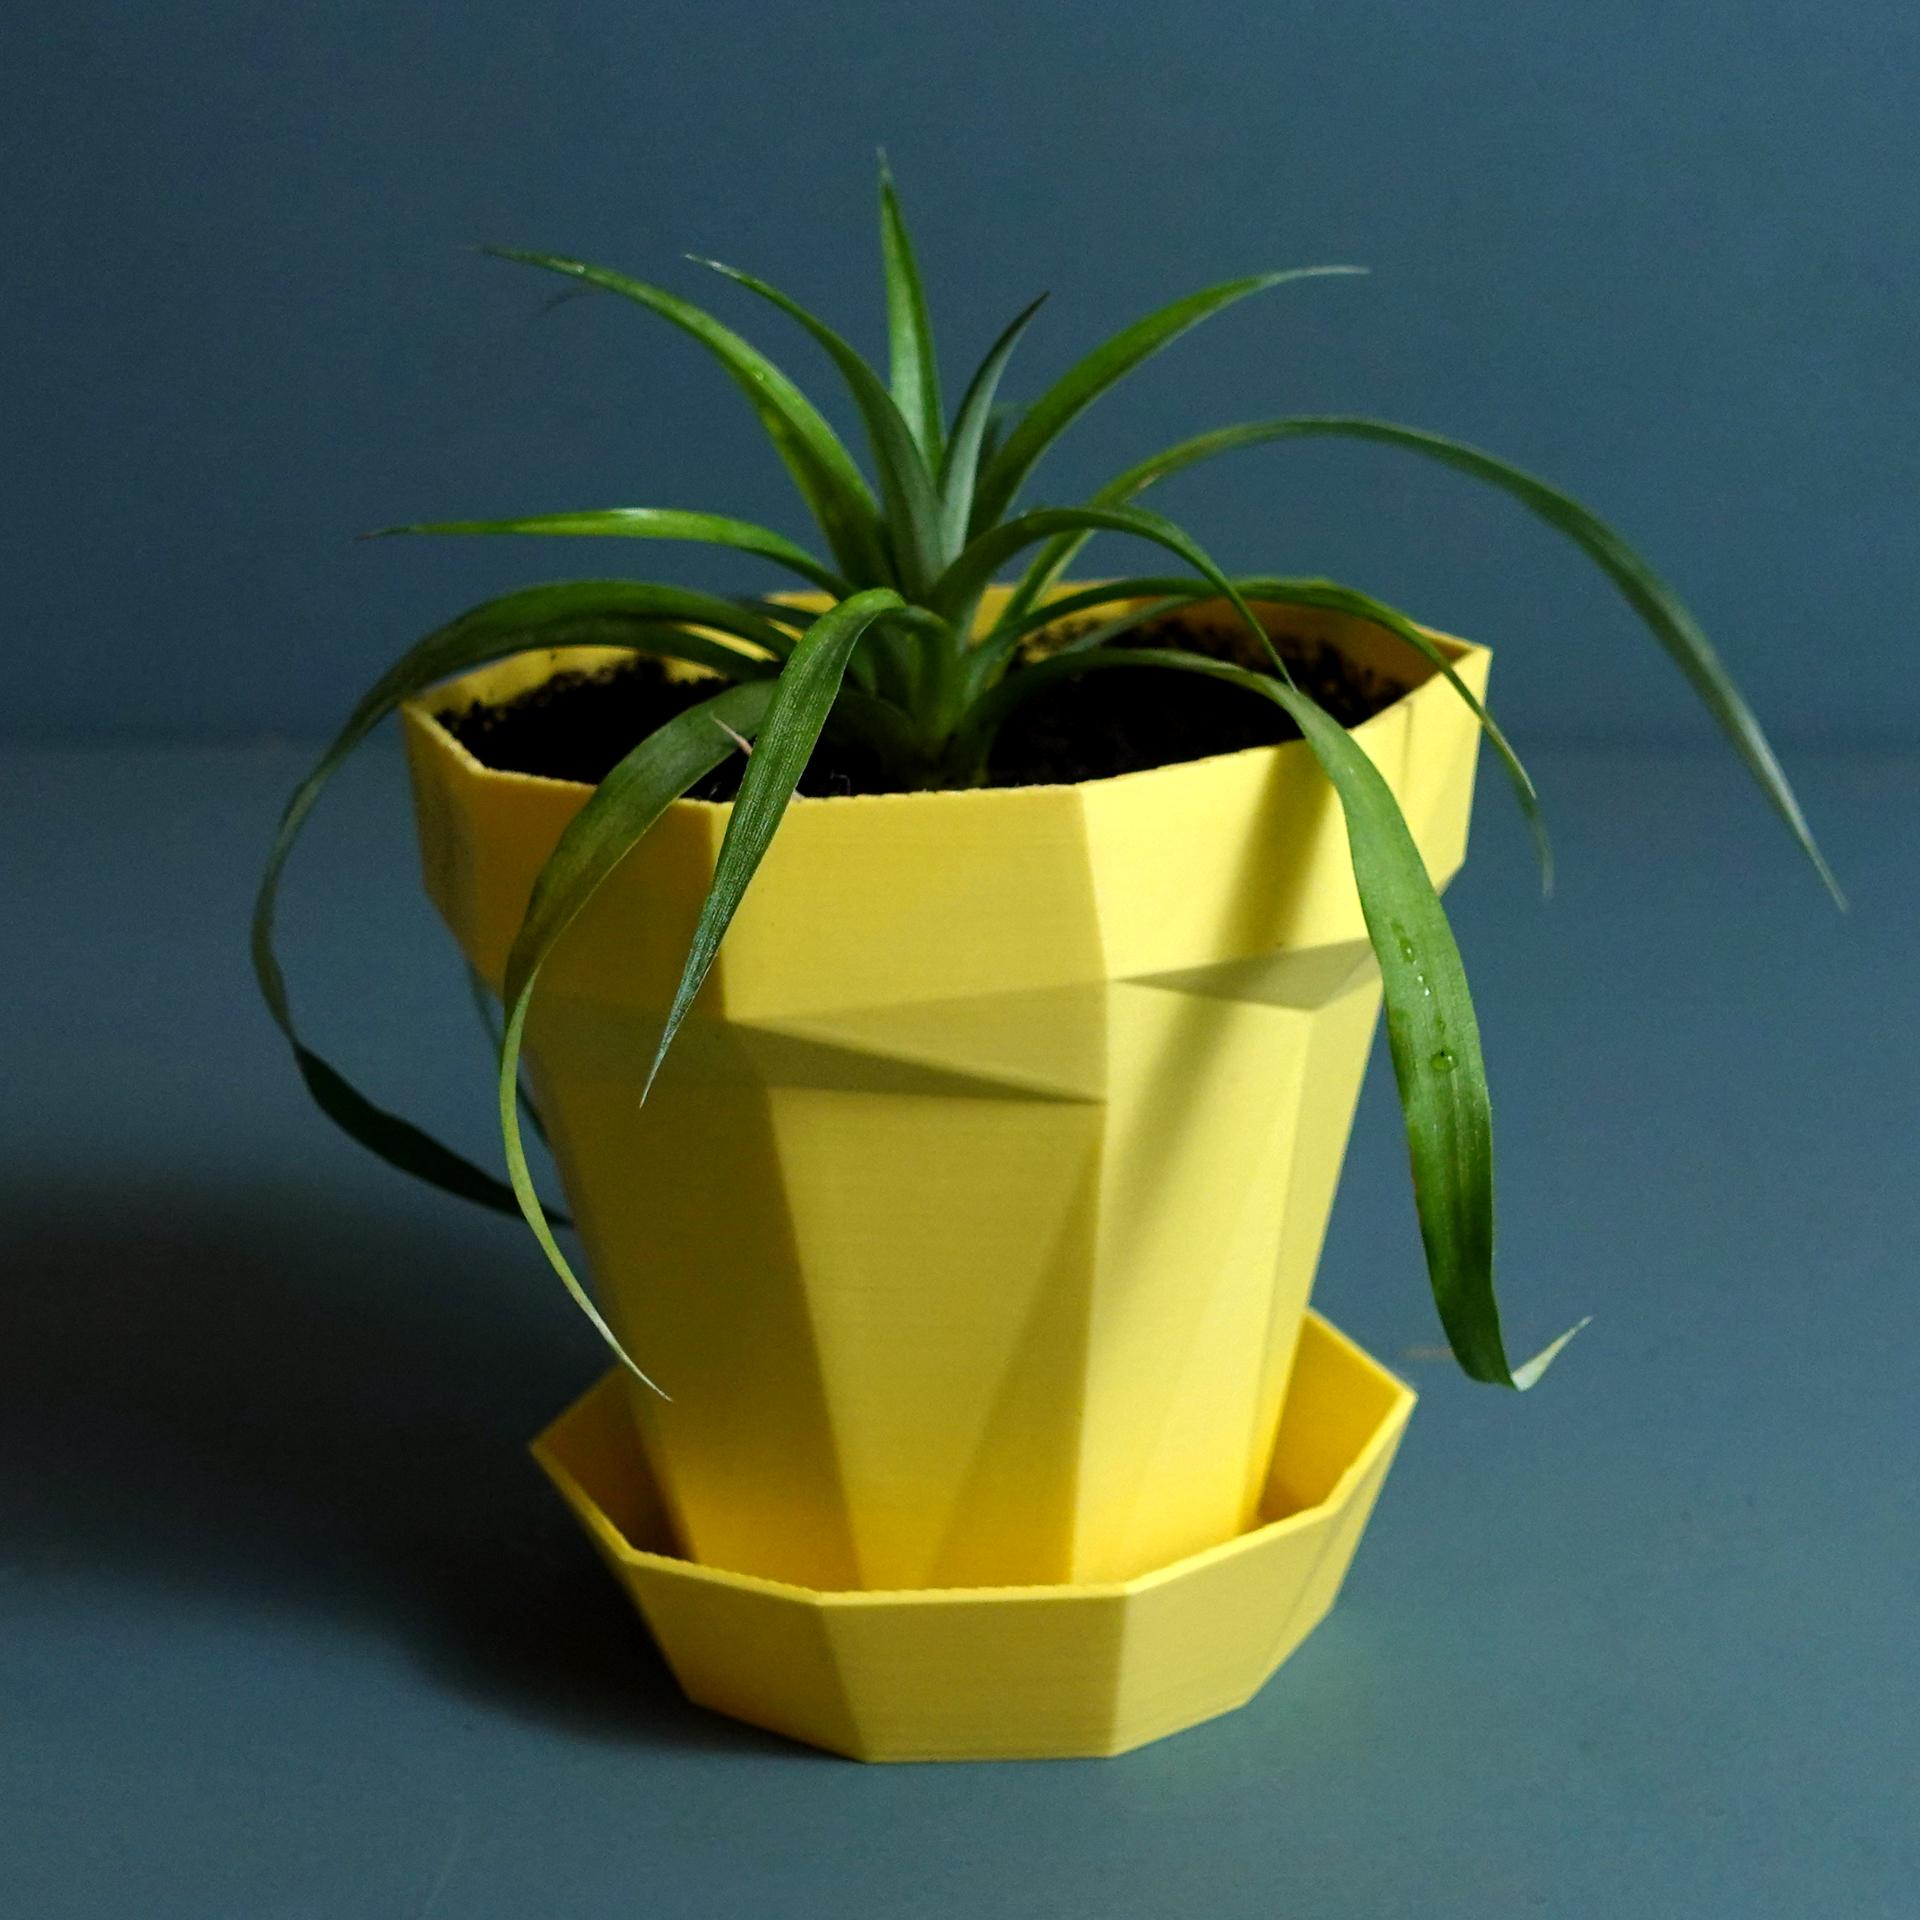 Planter “Glitch” 3d model